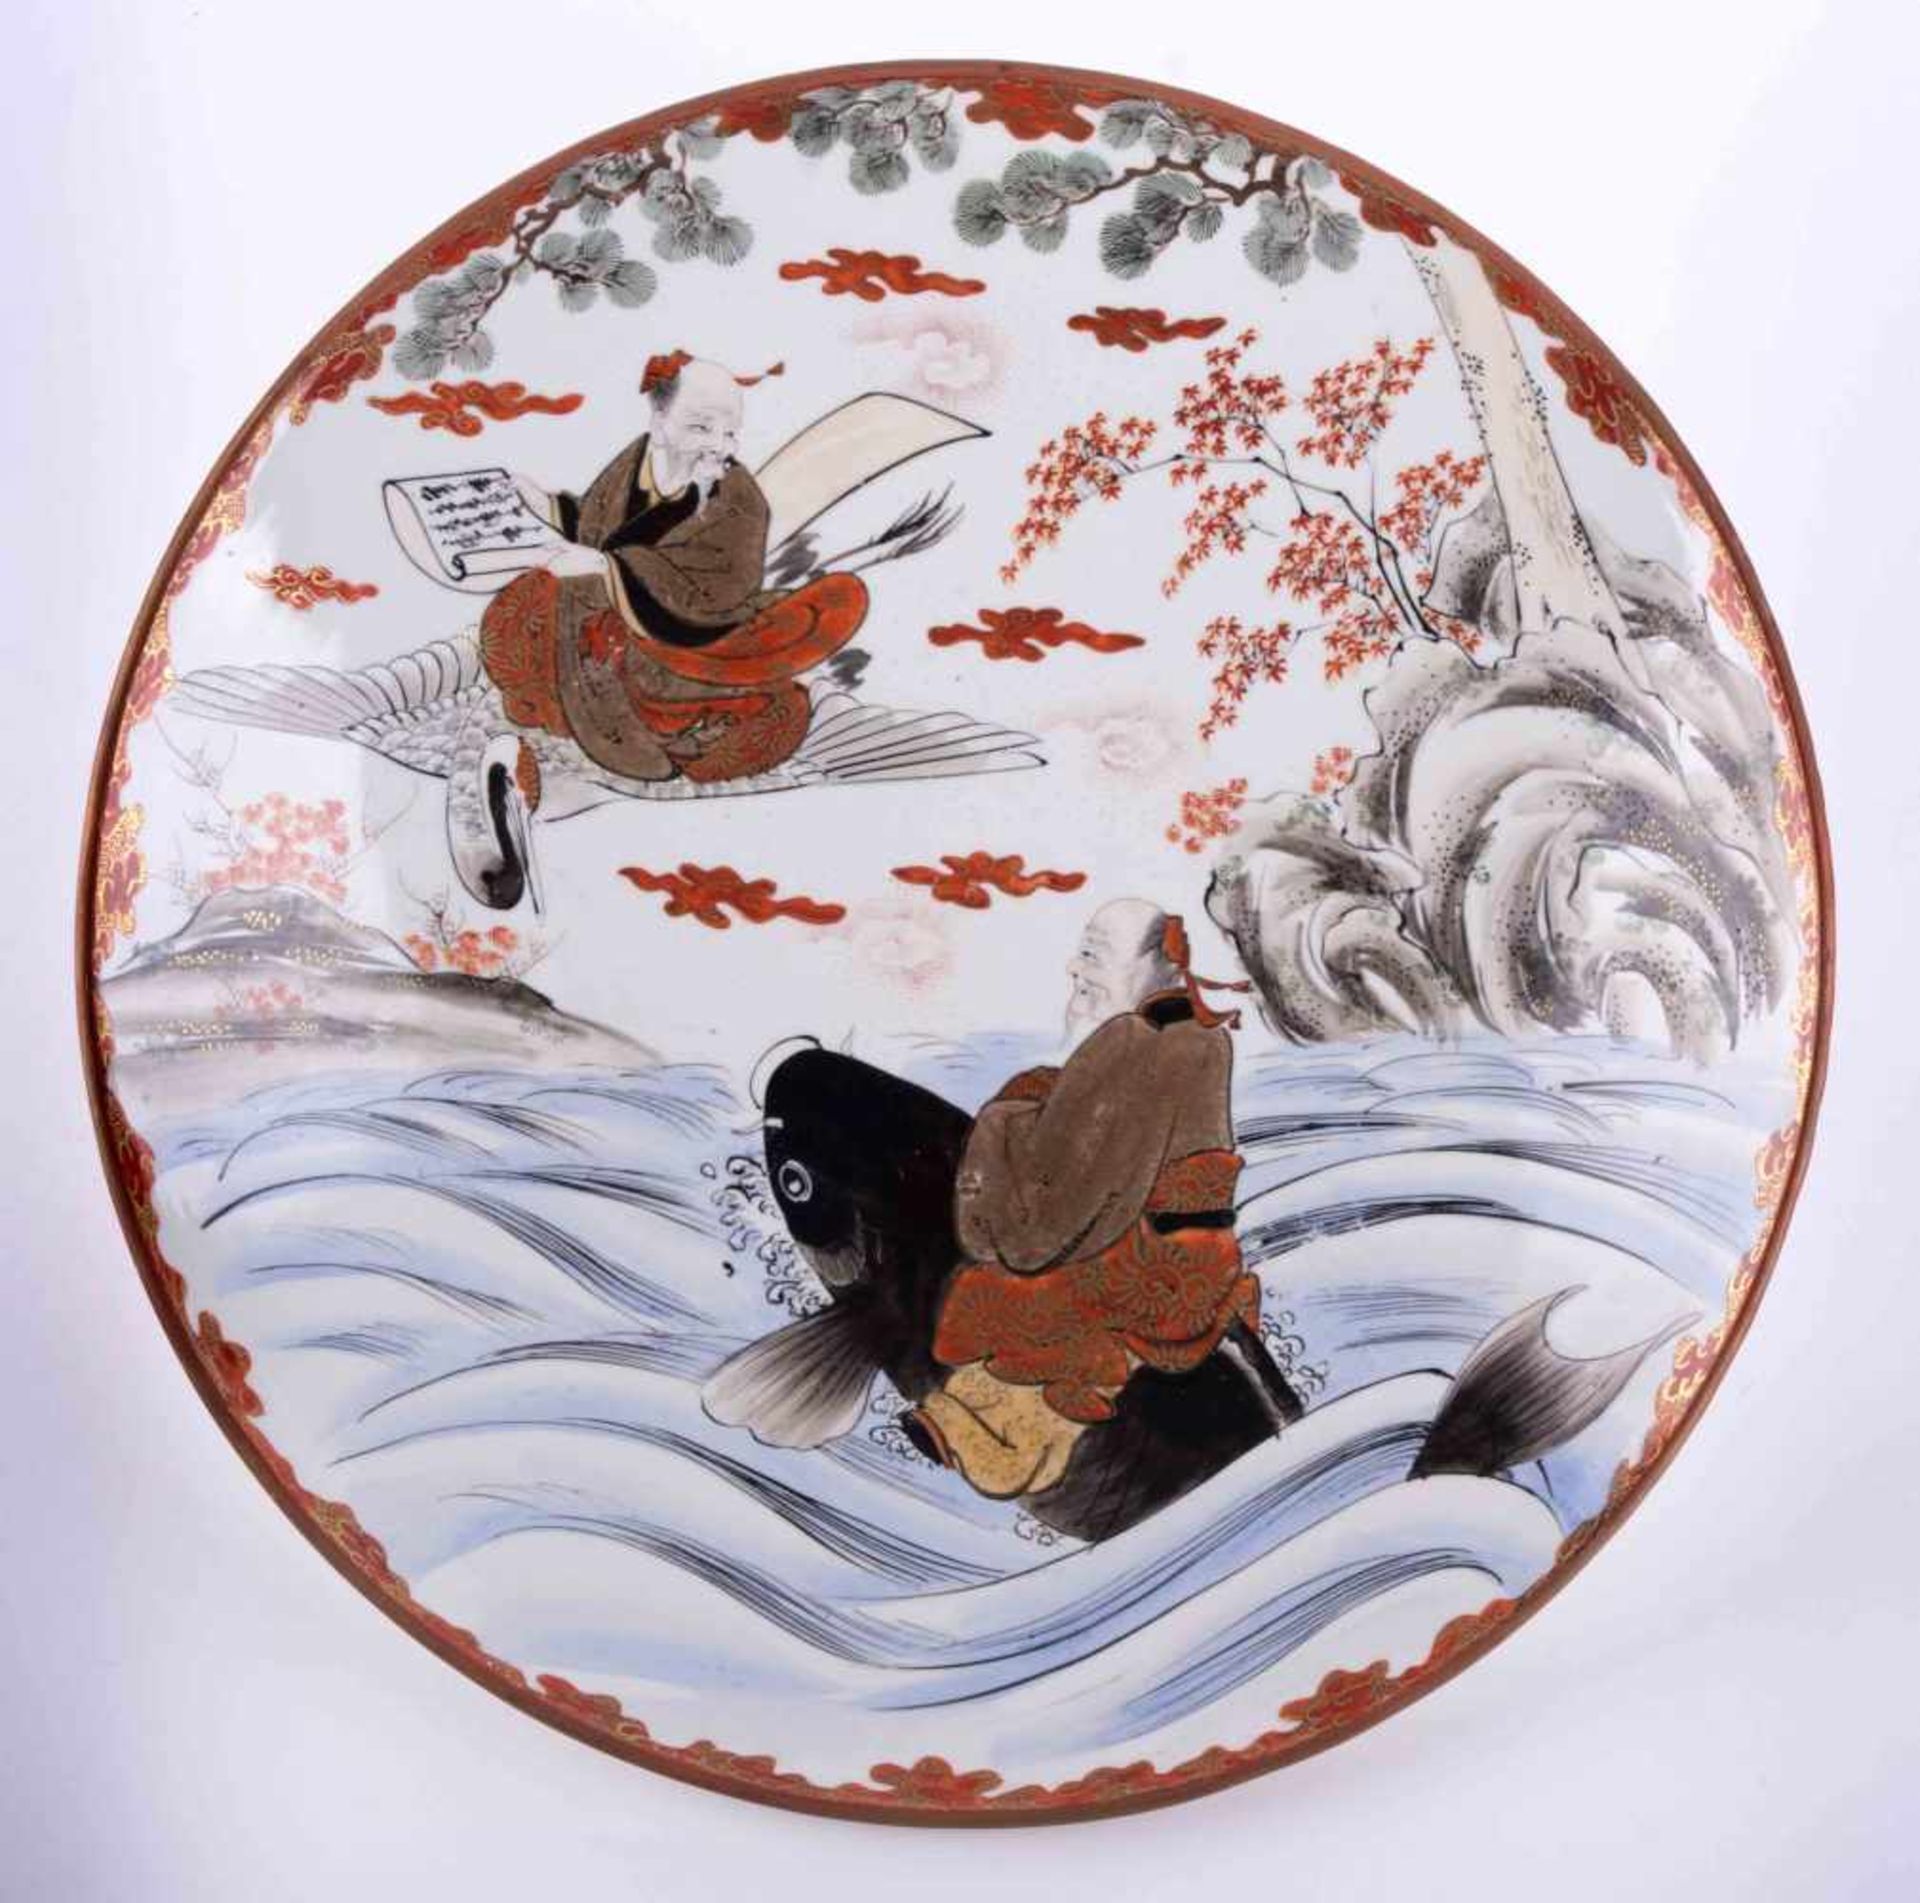 großer Teller Japan 19. Jhd./ Large plate, Japan 19th century farbig und goldstaffiert, unterm Stand